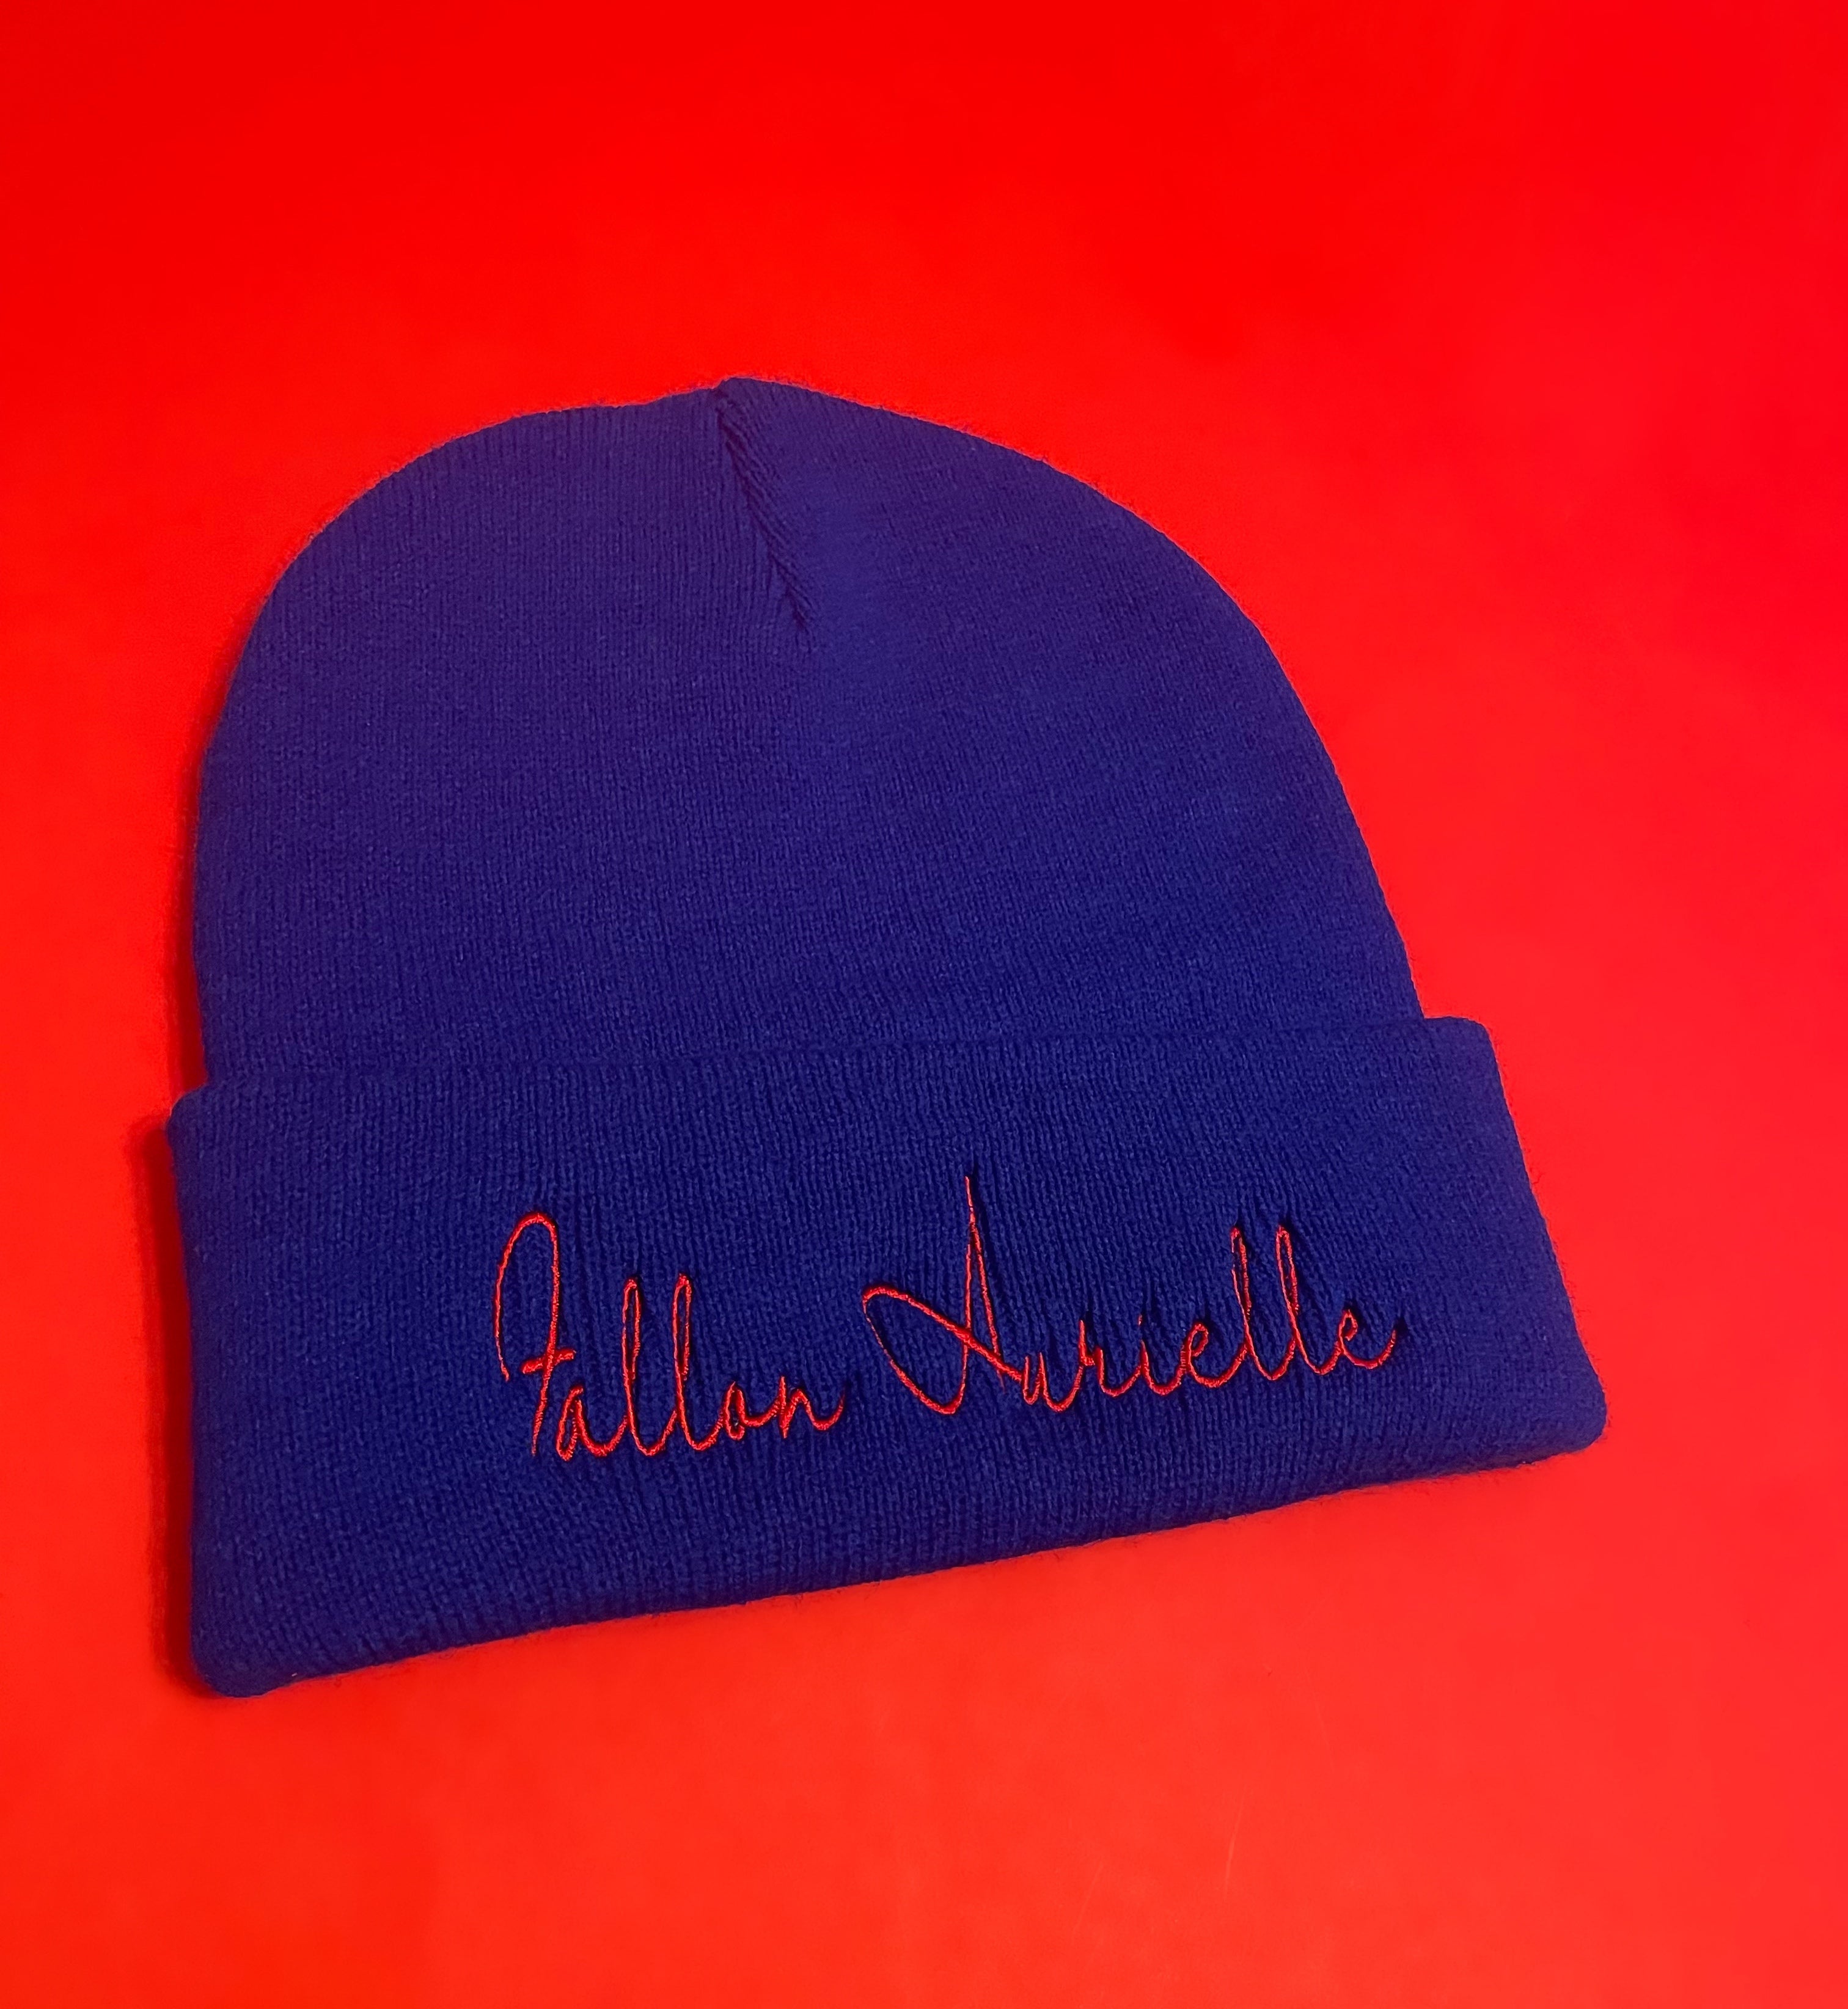 Fallon Aurielle Signature Beanie Hat (Royal Blue & Red)